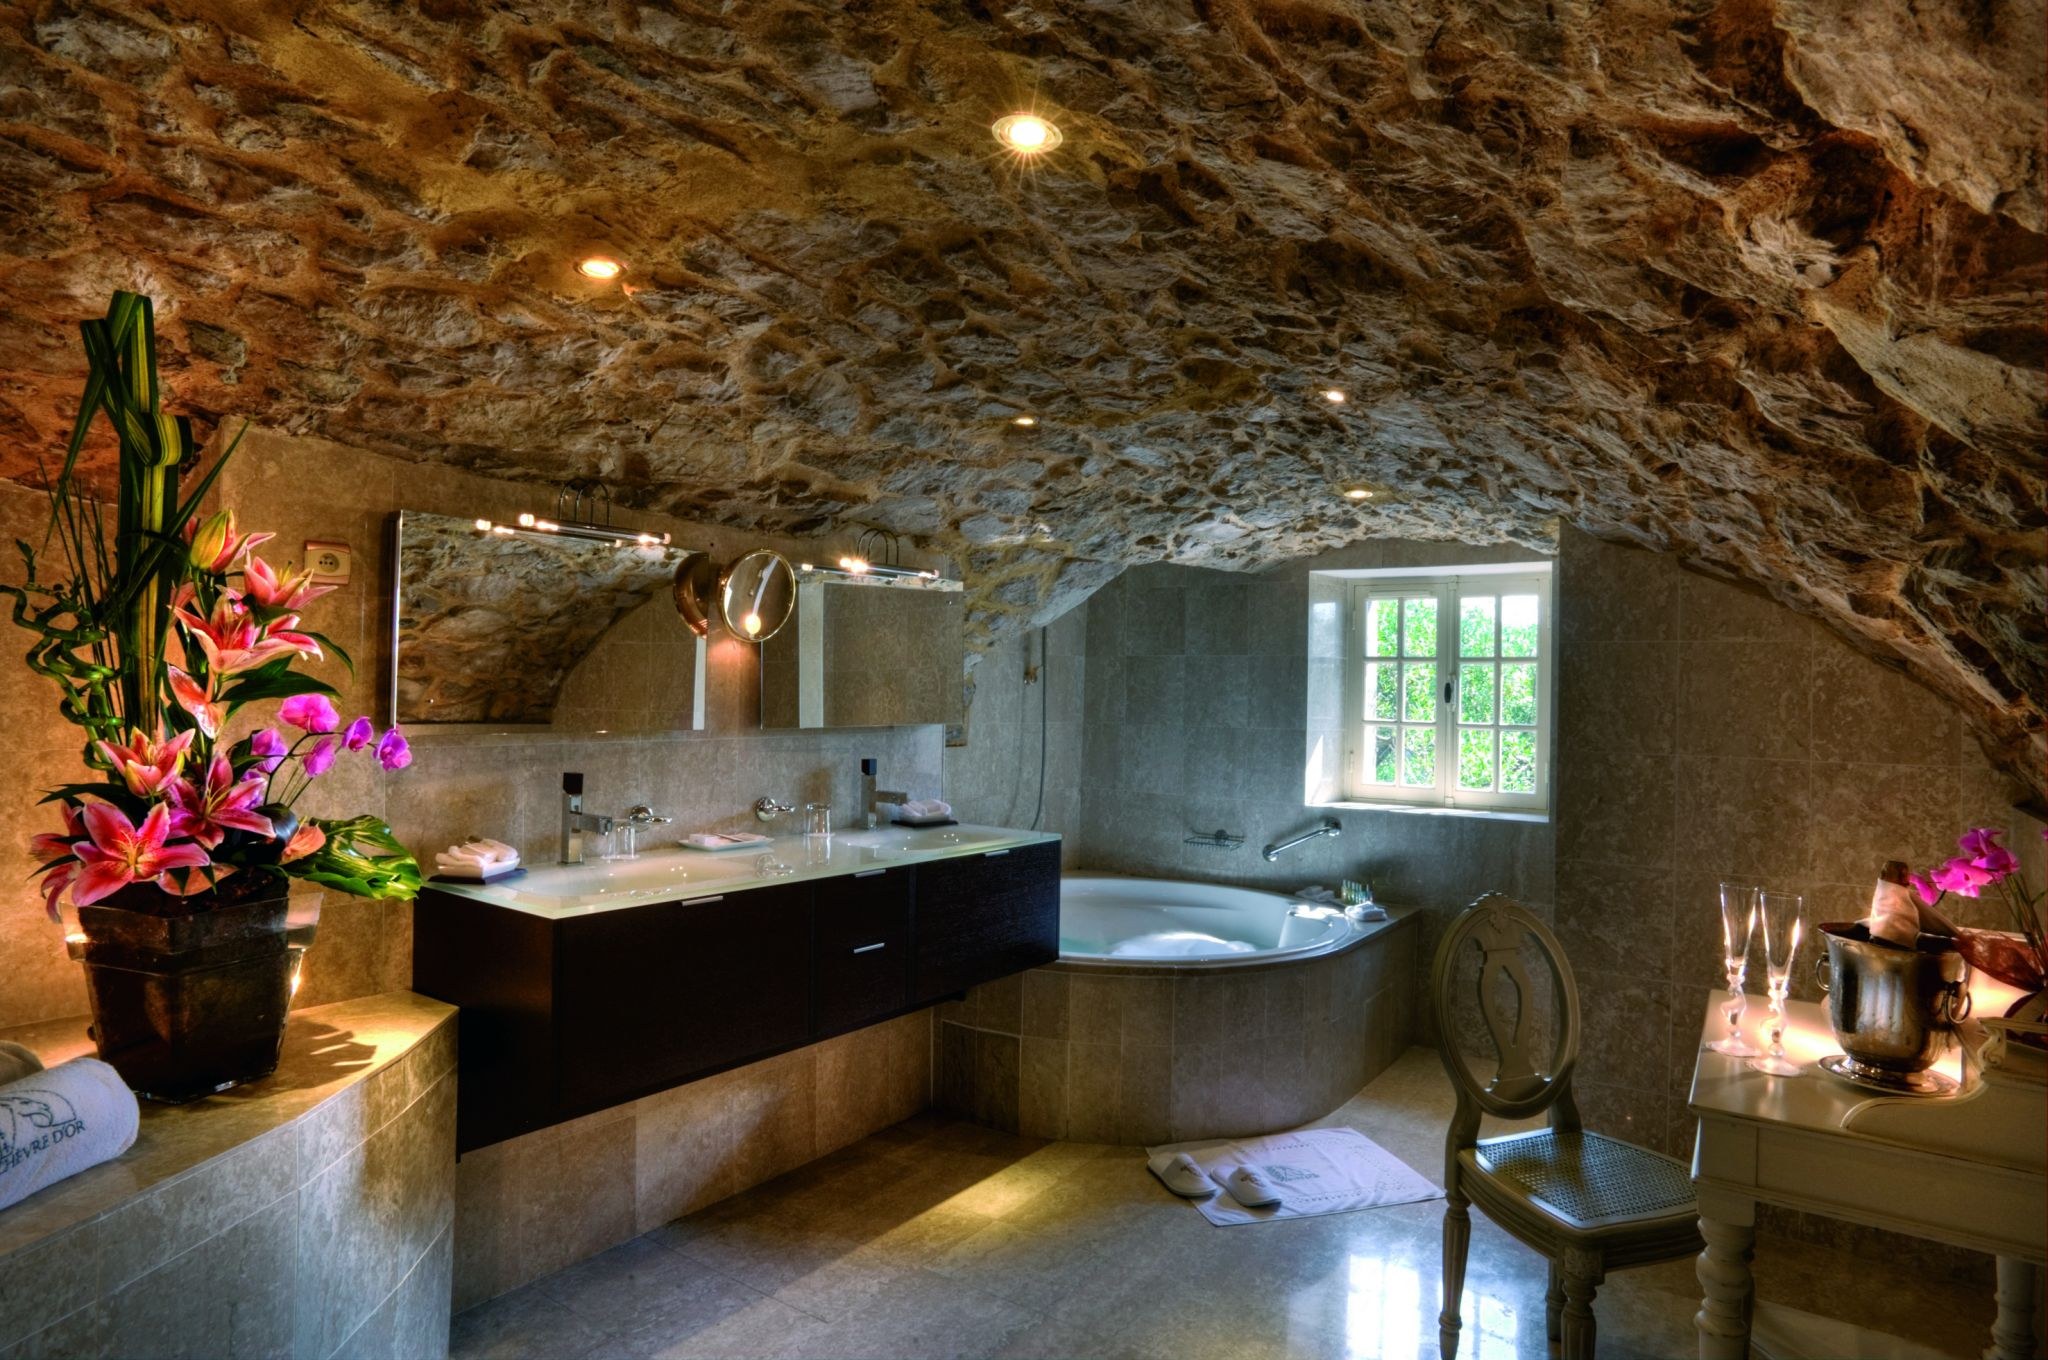 Скала на потолке. Гостиница Beckham Creek Cave Lodge. Ванная в стиле пещеры. Ванная комната в стиле пещеры. Интерьер в стиле пещеры.